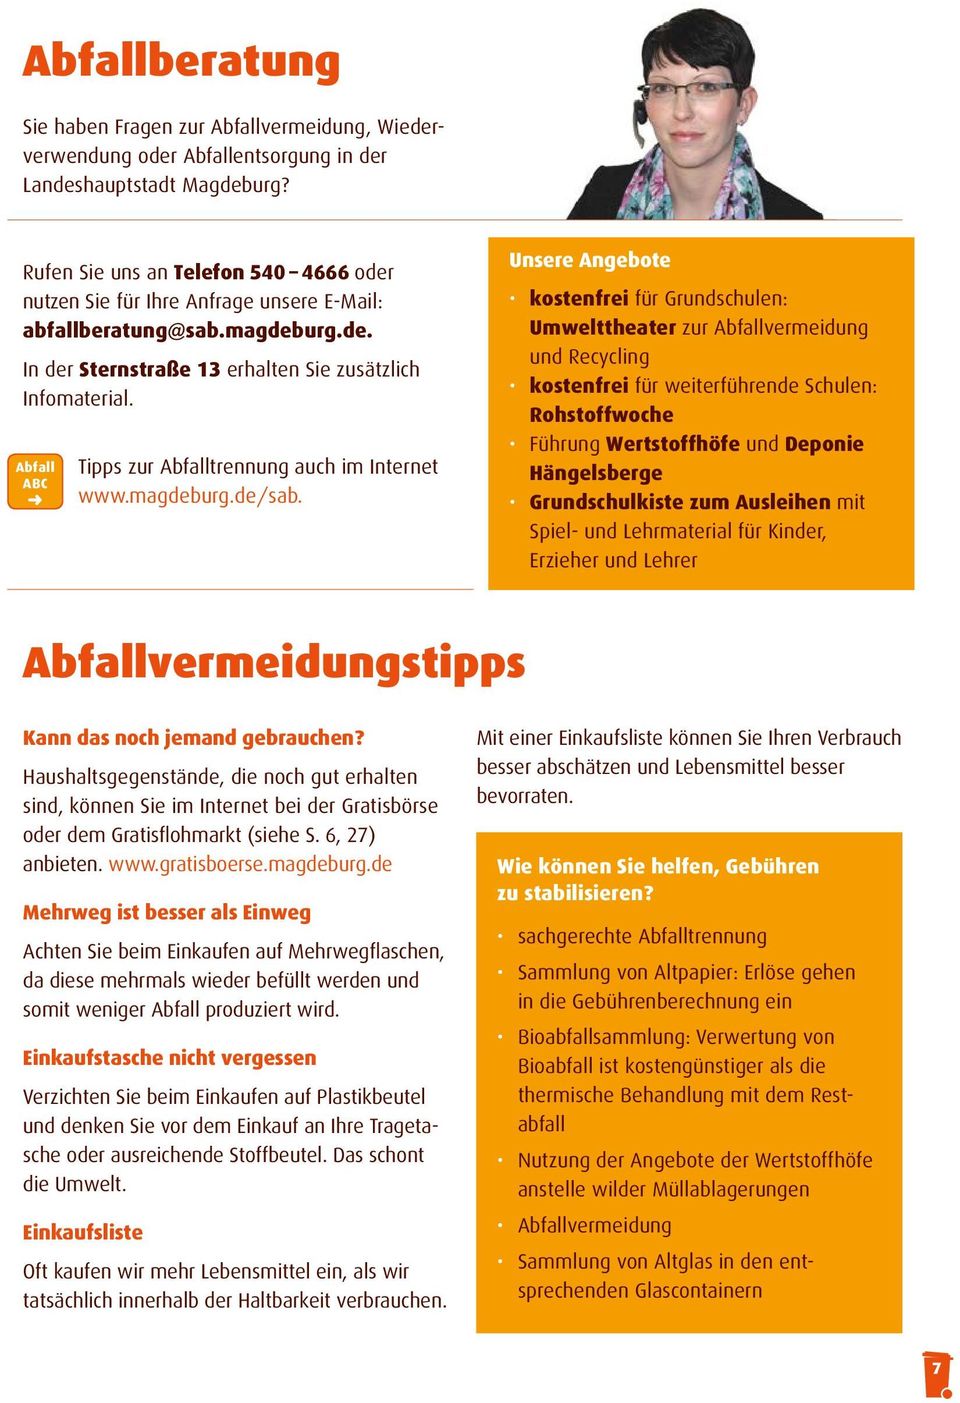 Abfall ABC Tipps zur Abfalltrennung auch im Internet www.magdeburg.de/sab.